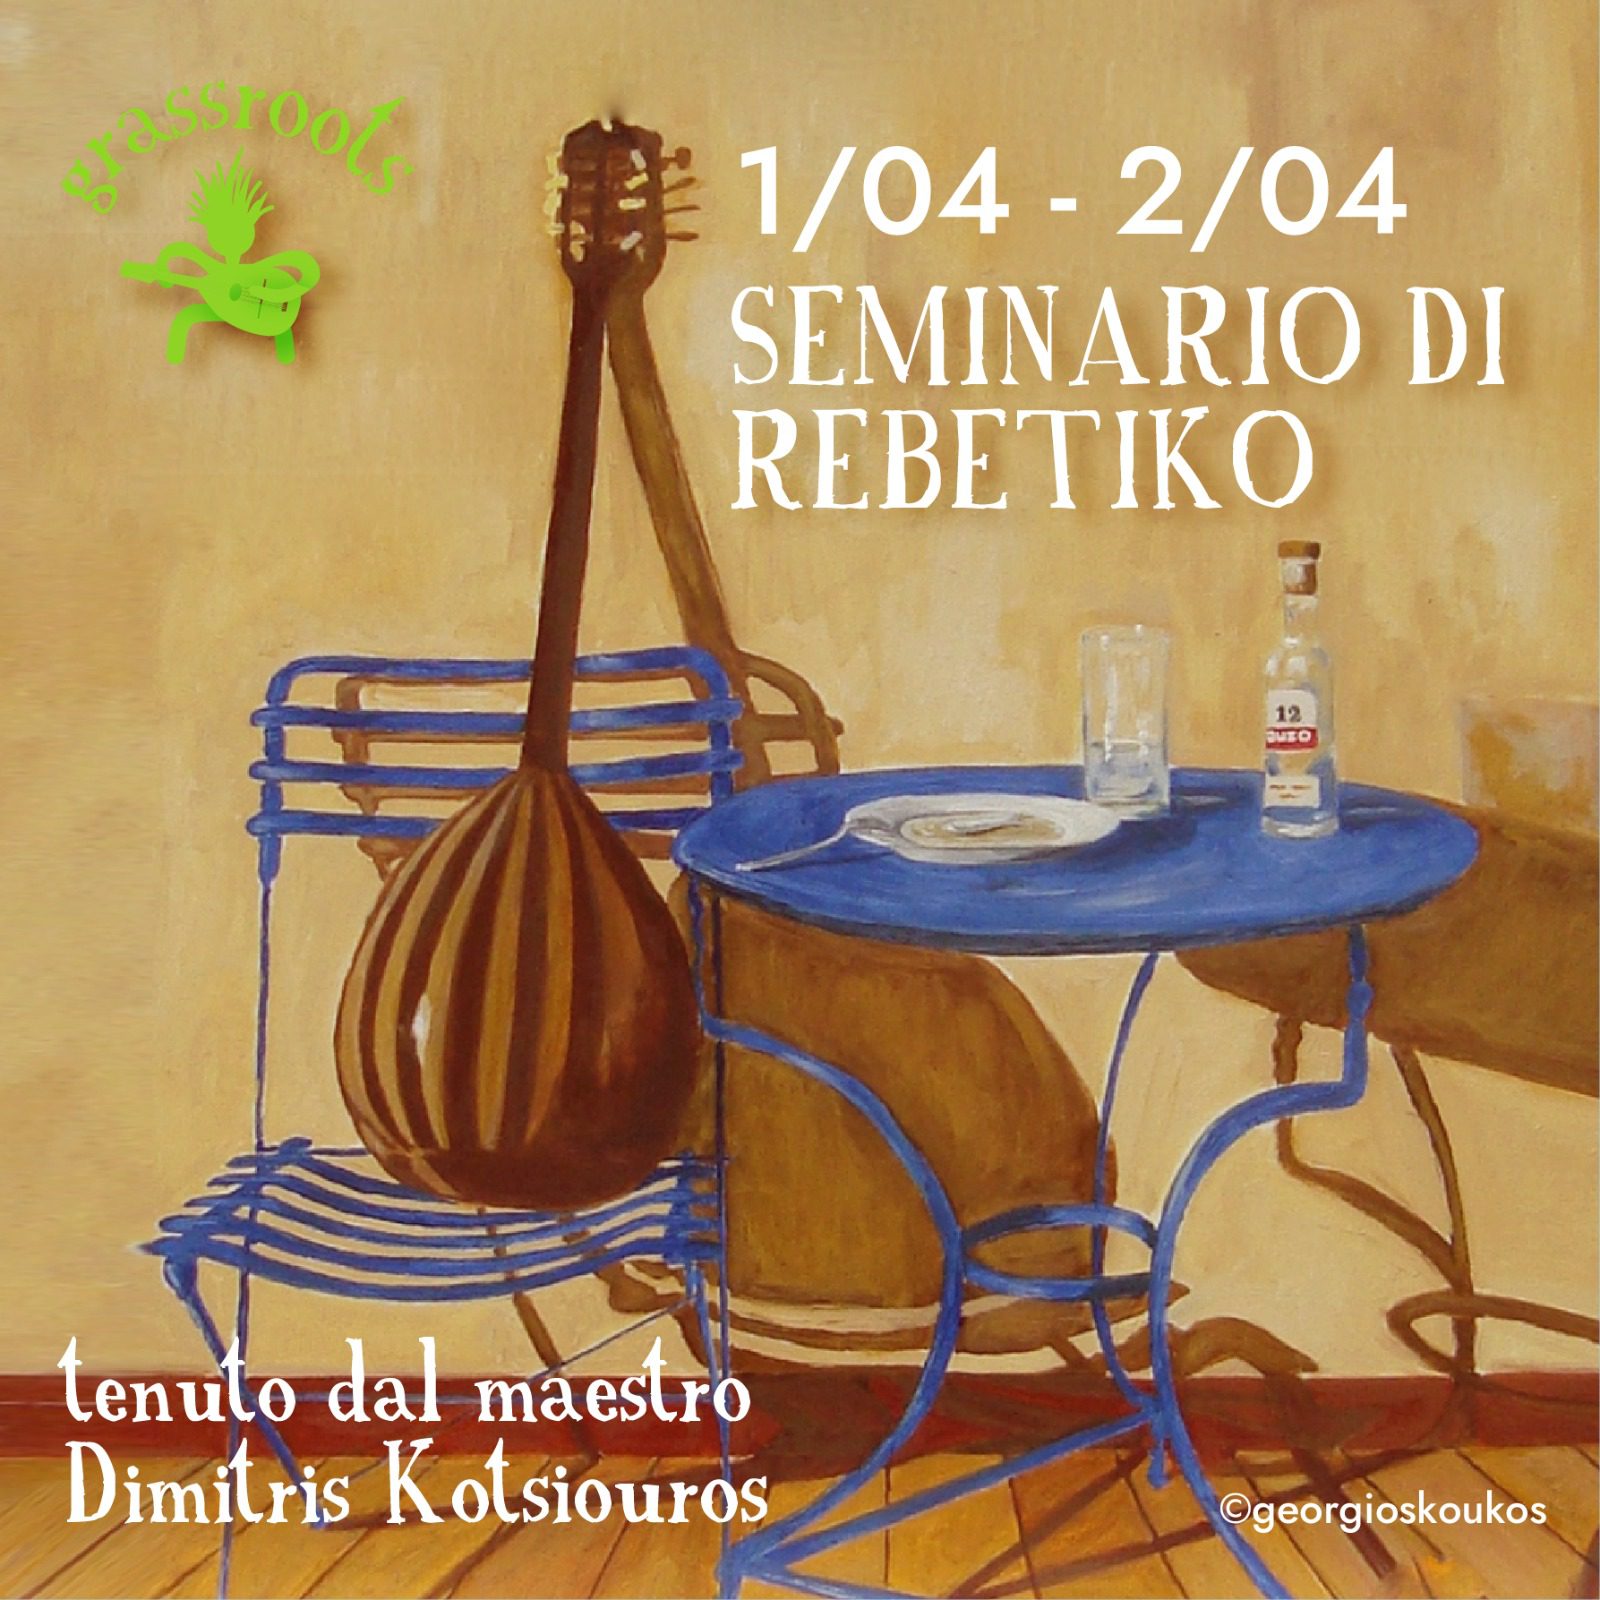 You are currently viewing Seminario e Serata di Rebetiko